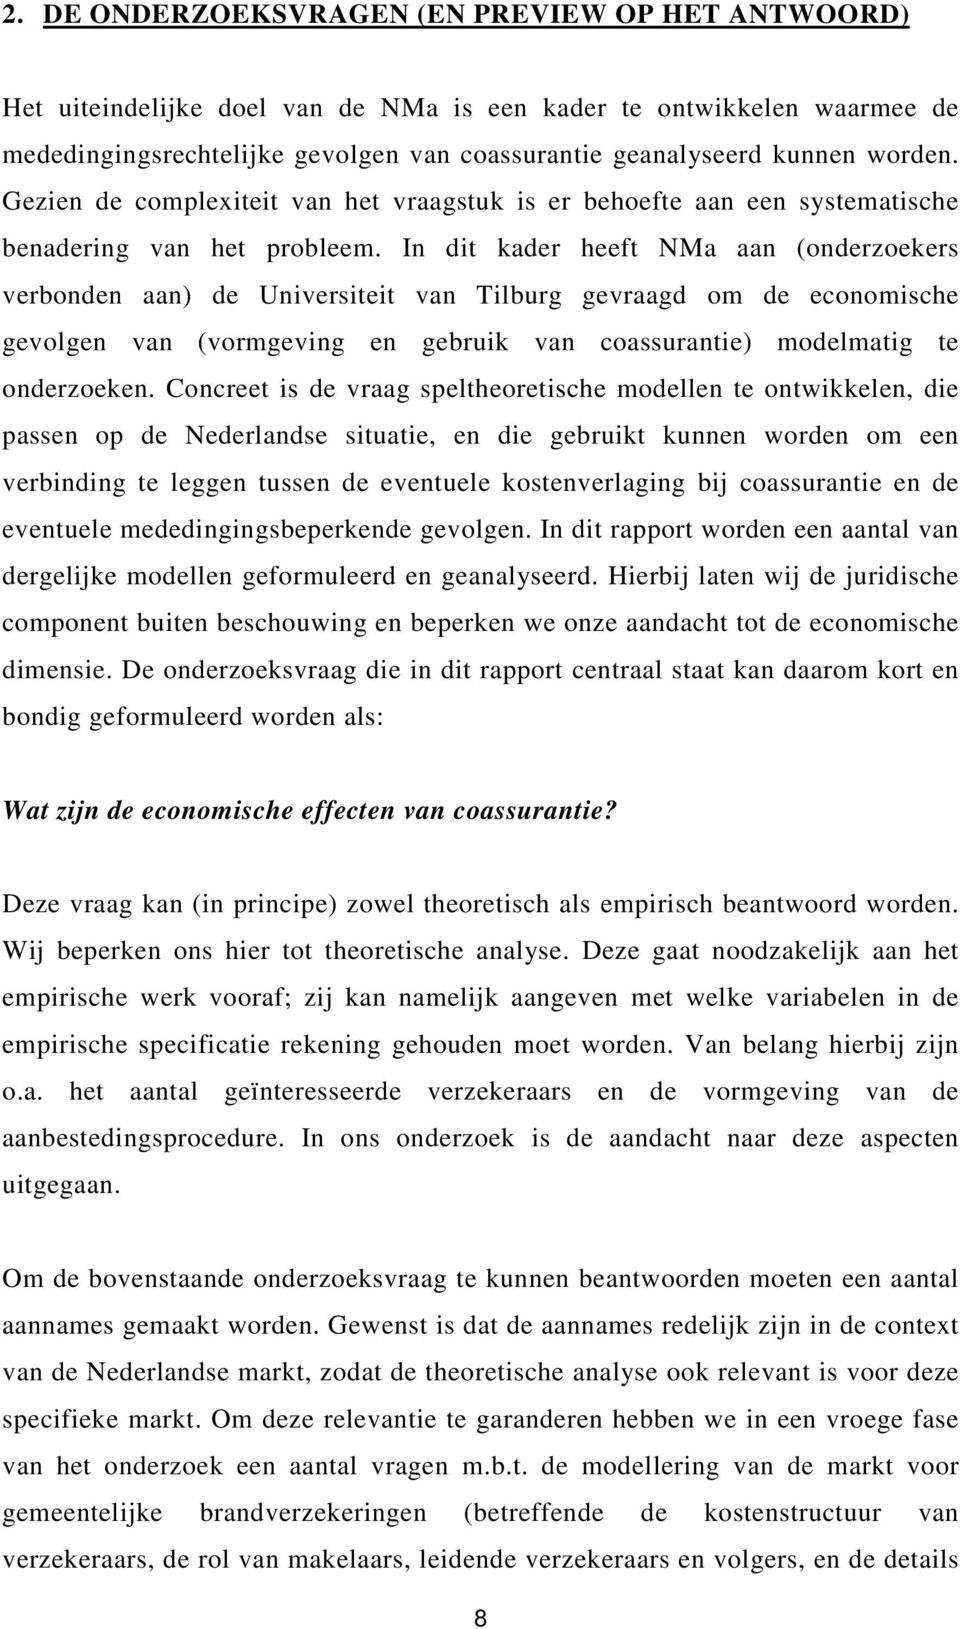 In dit kader heeft NMa aan (onderzoekers verbonden aan) de Universiteit van Tilburg gevraagd om de economische gevolgen van (vormgeving en gebruik van coassurantie) modelmatig te onderzoeken.